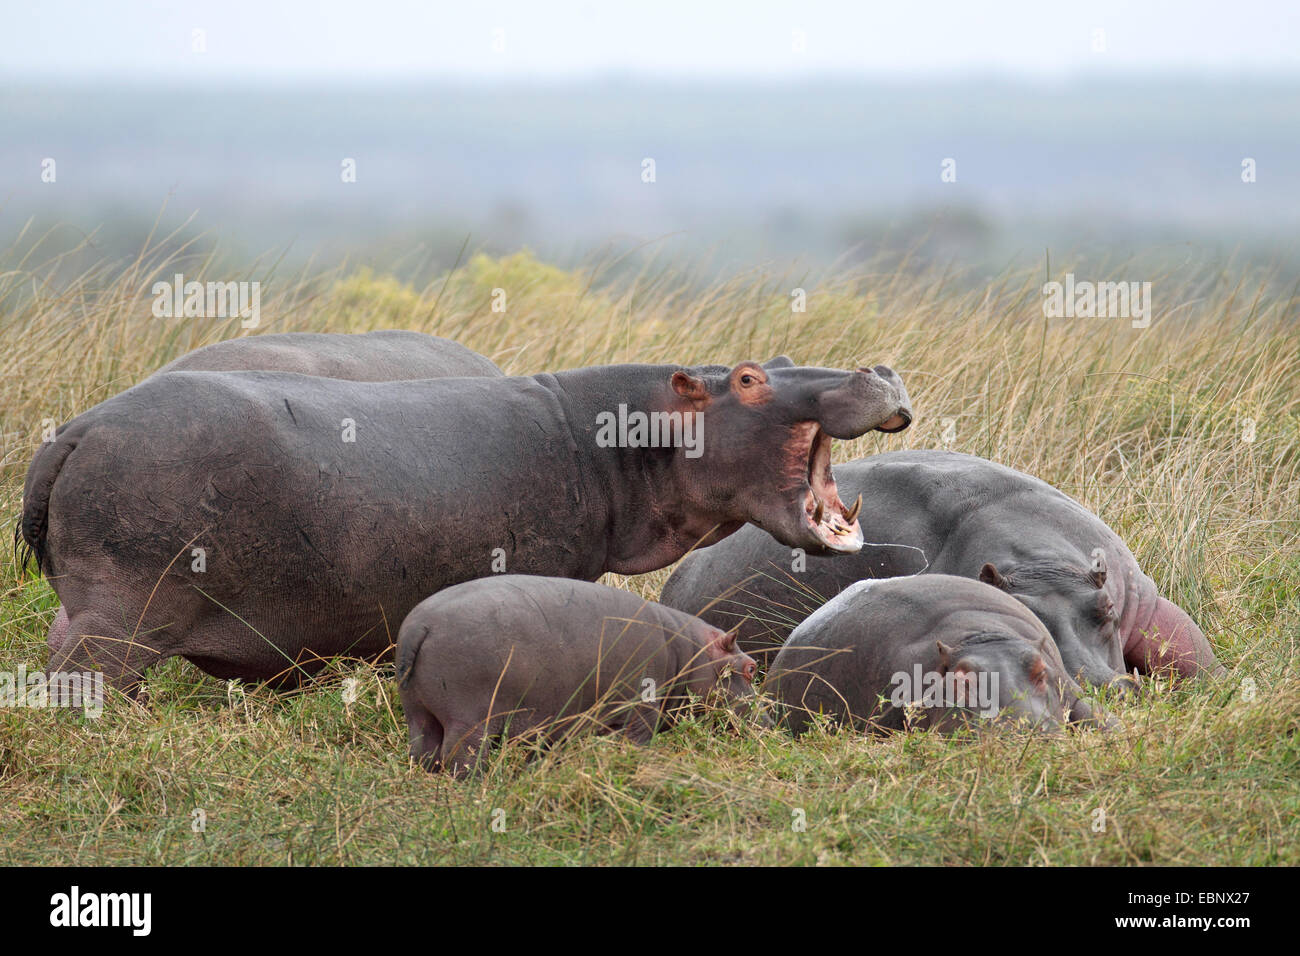 Hipopótamos, hipopótamos, hipopótamo común (Hippopotamus amphibius), animal adulto con la boca abierta custodiando las lactantes, Sudáfrica, Santa Lucía Foto de stock